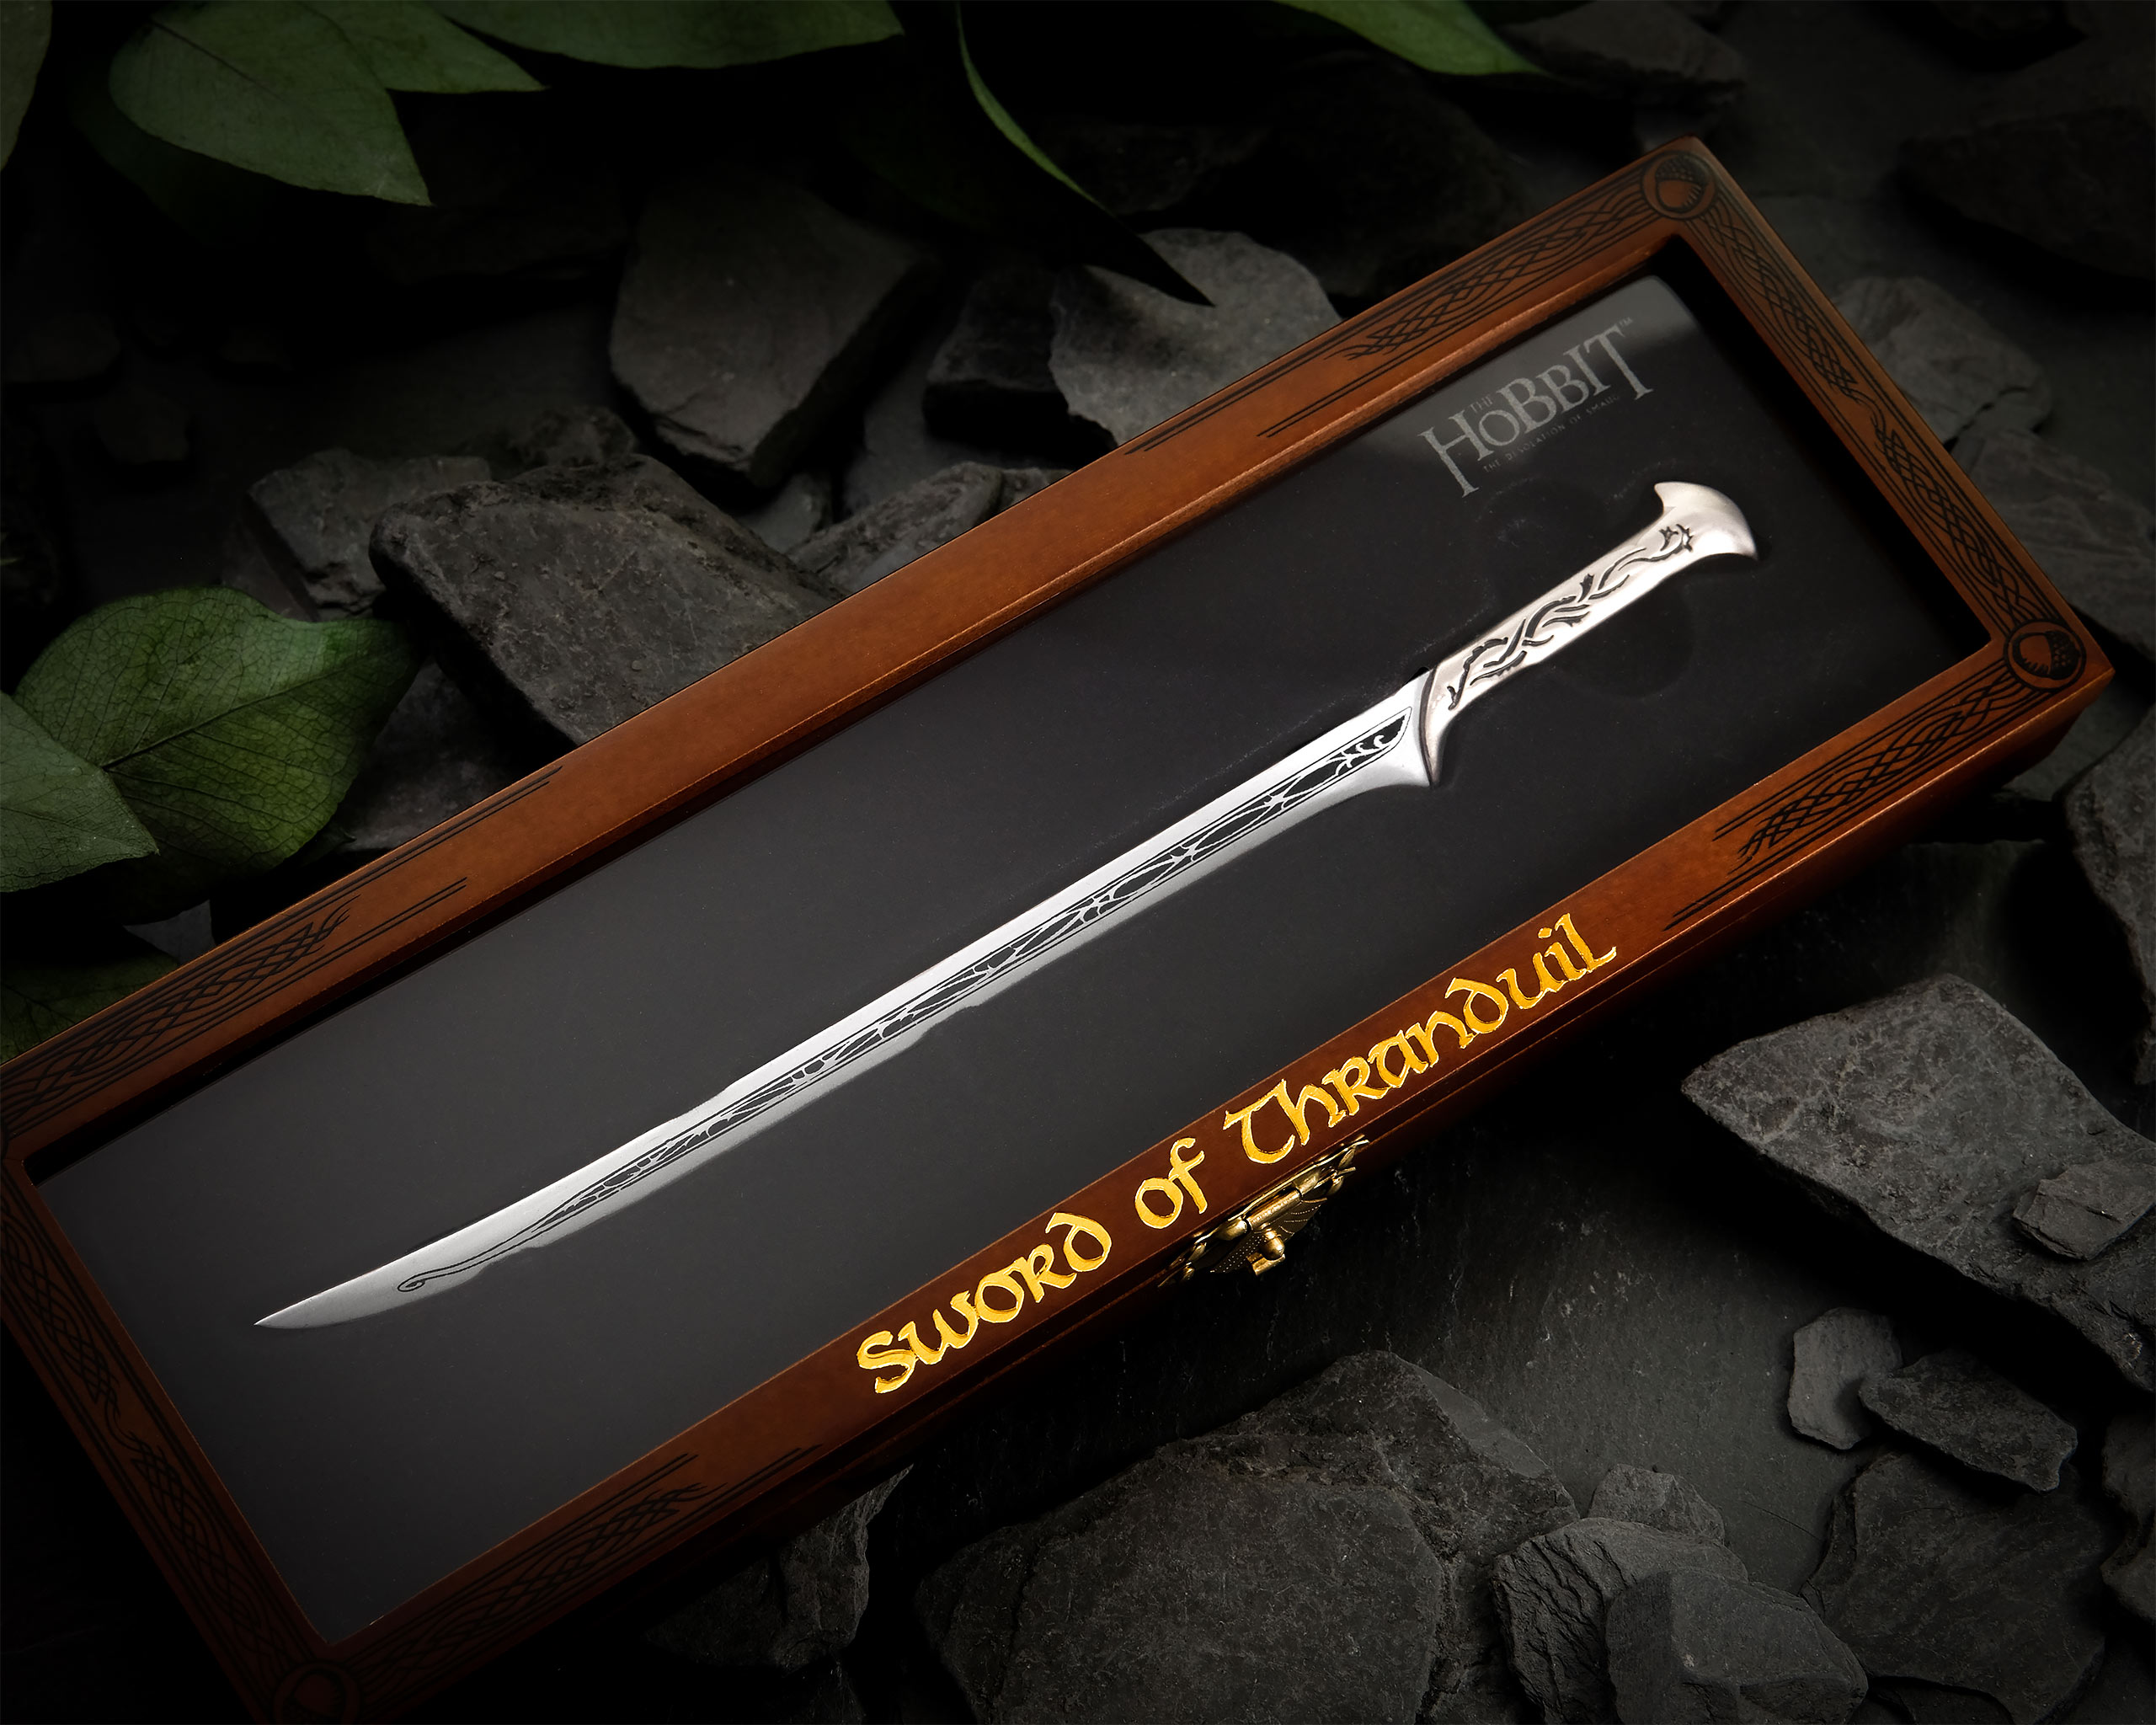 The Hobbit - Thranduil's Sword Letter Opener